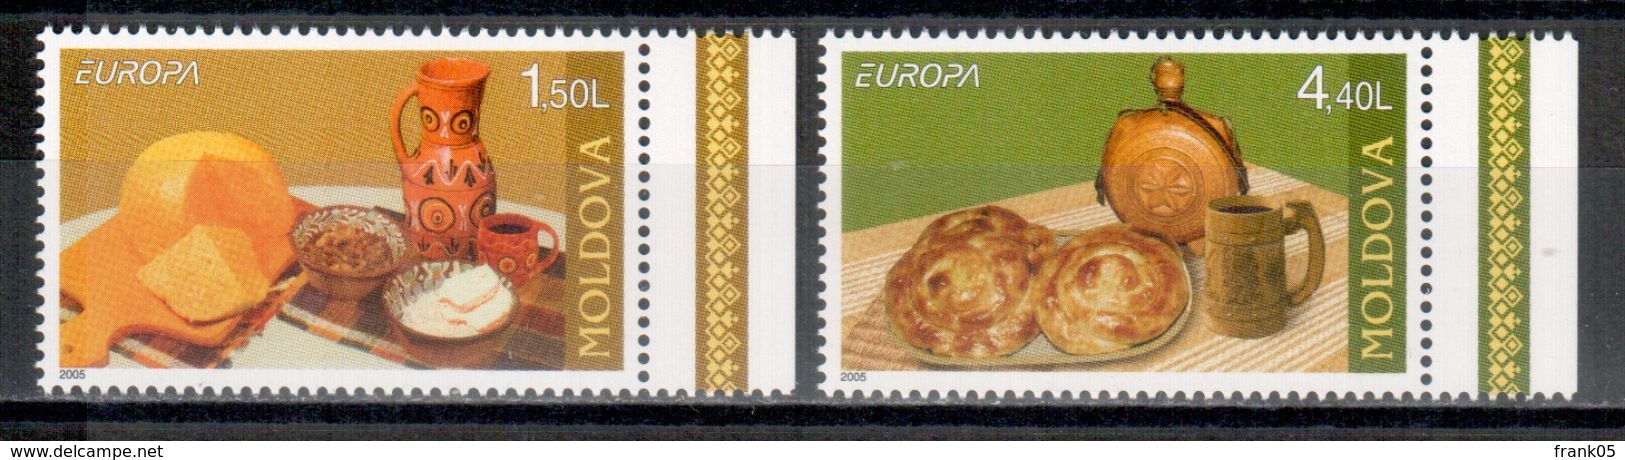 Moldawien / Moldova / Moldavie 2005 Satz/set EUROPA ** - 2005